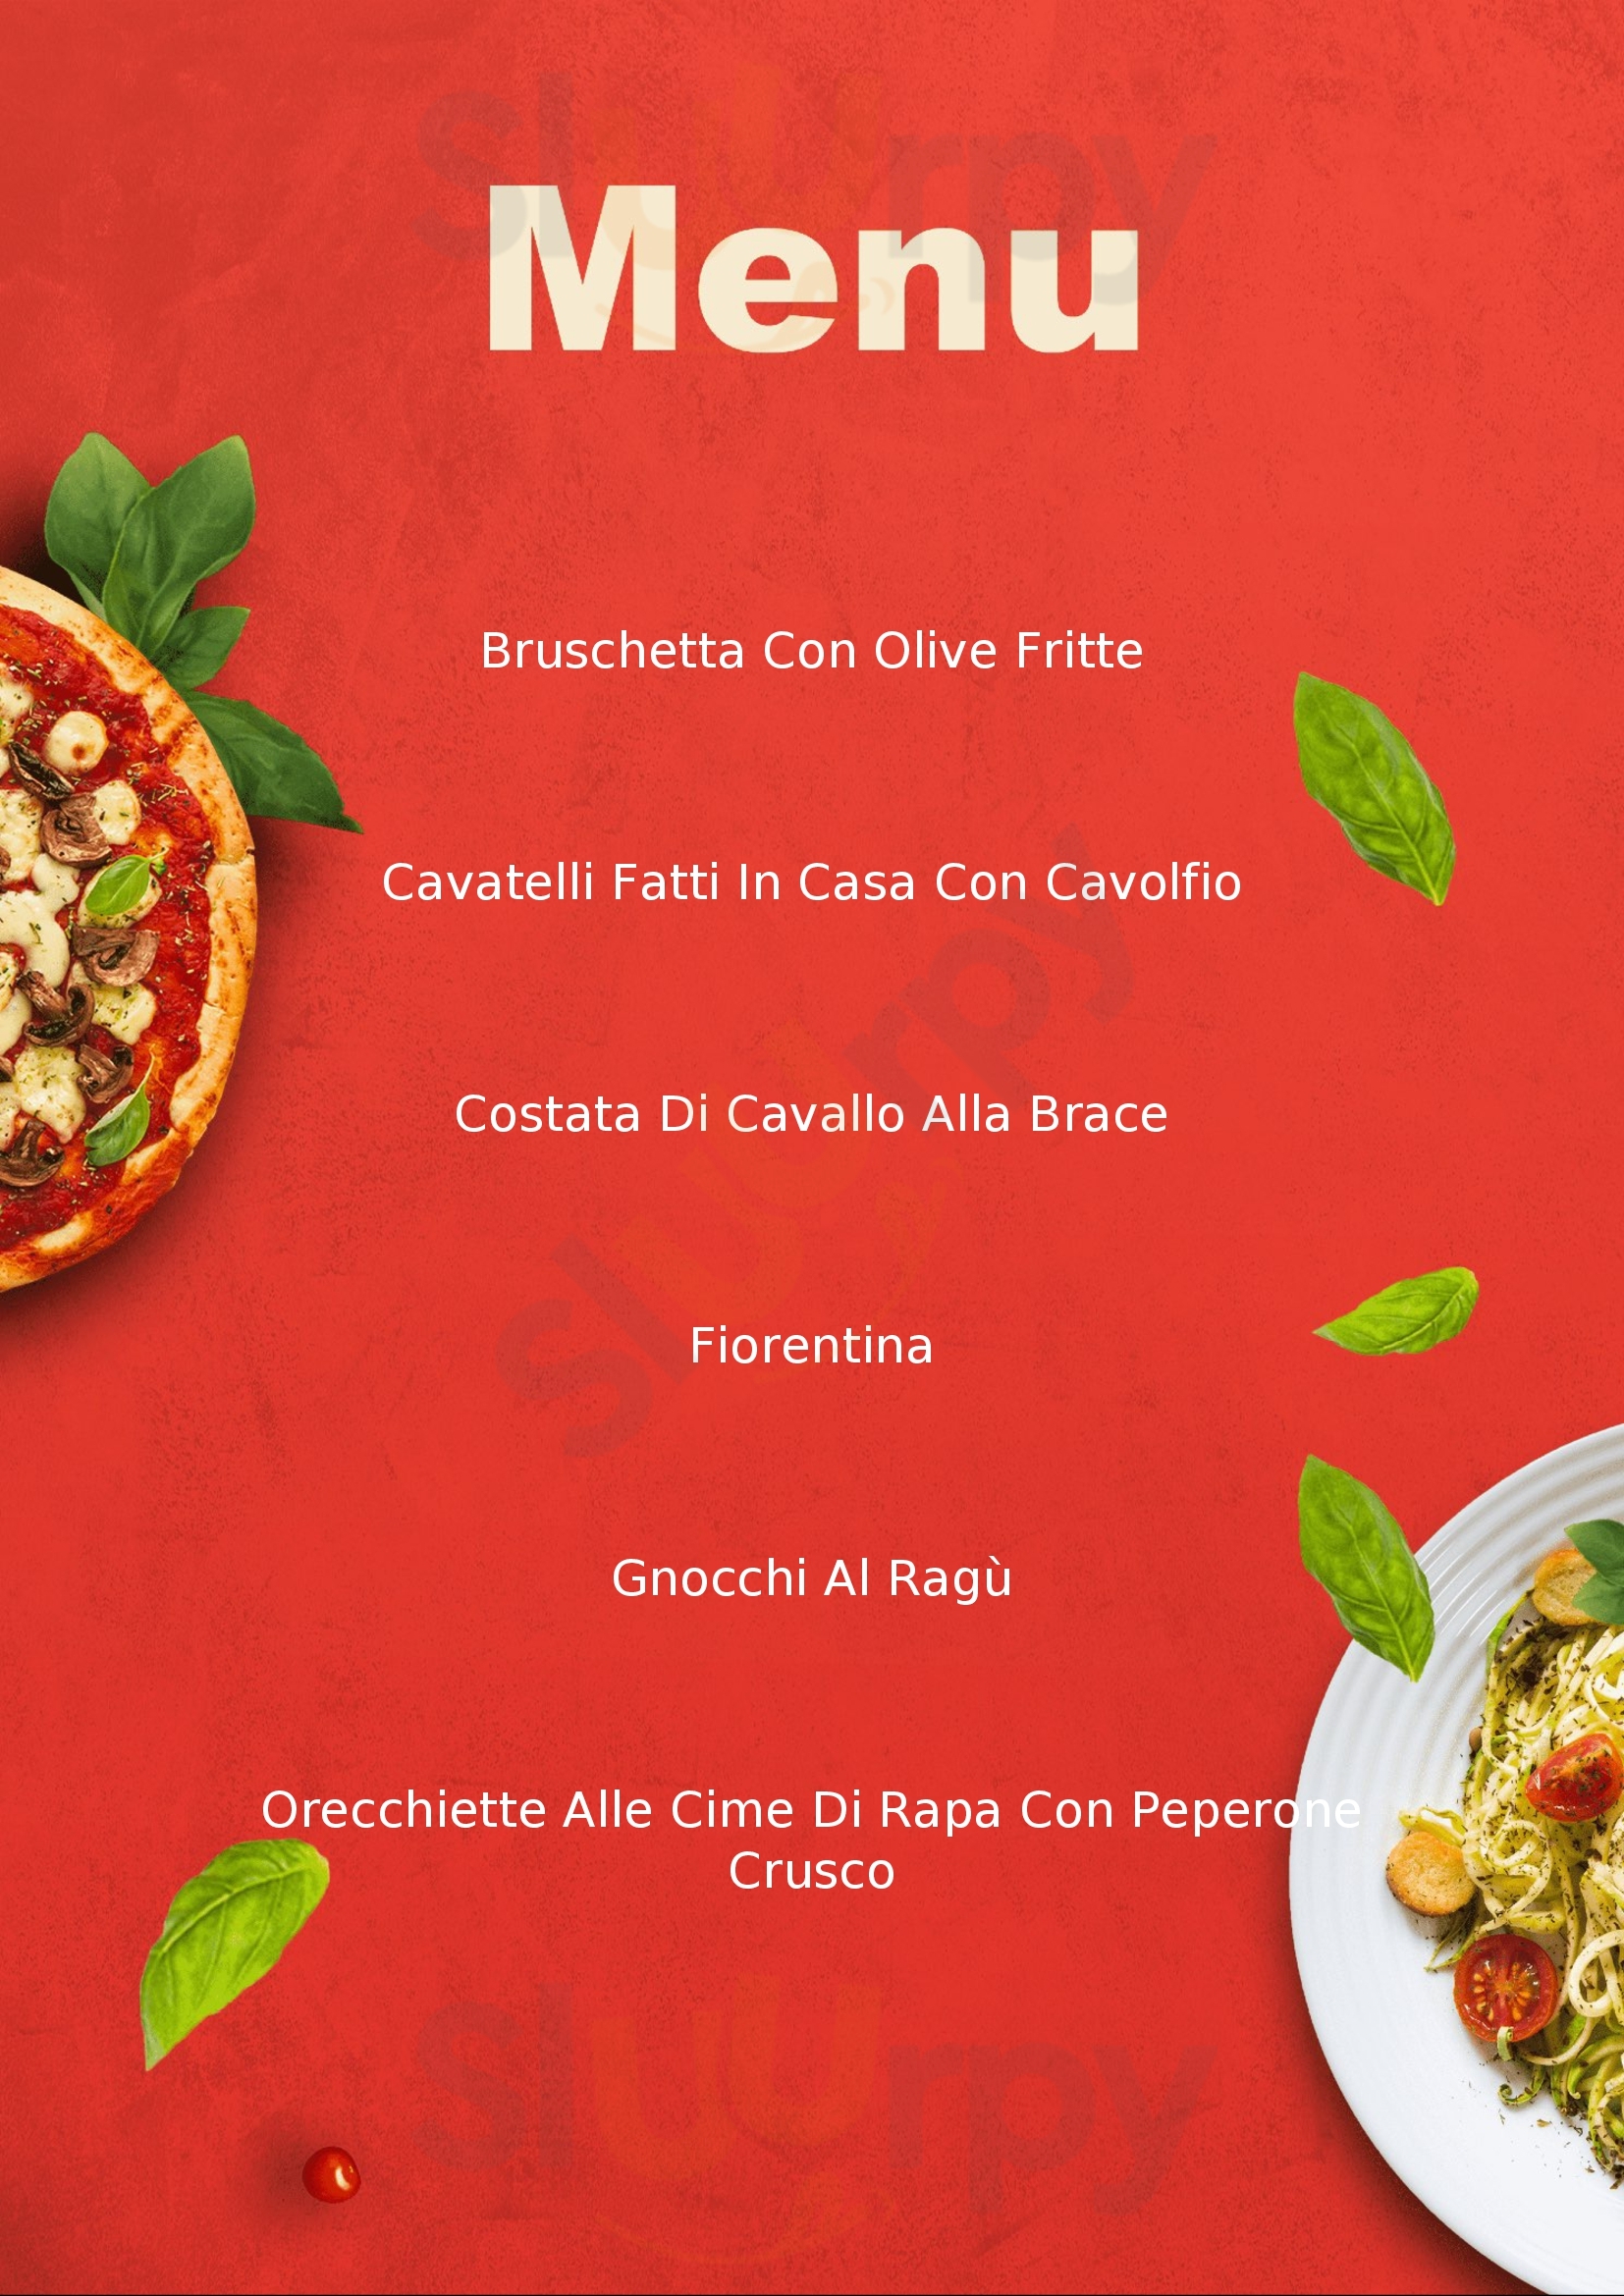 Trattoria Pizzeria Dirolla di Simeone Pasquale Spinazzola menù 1 pagina